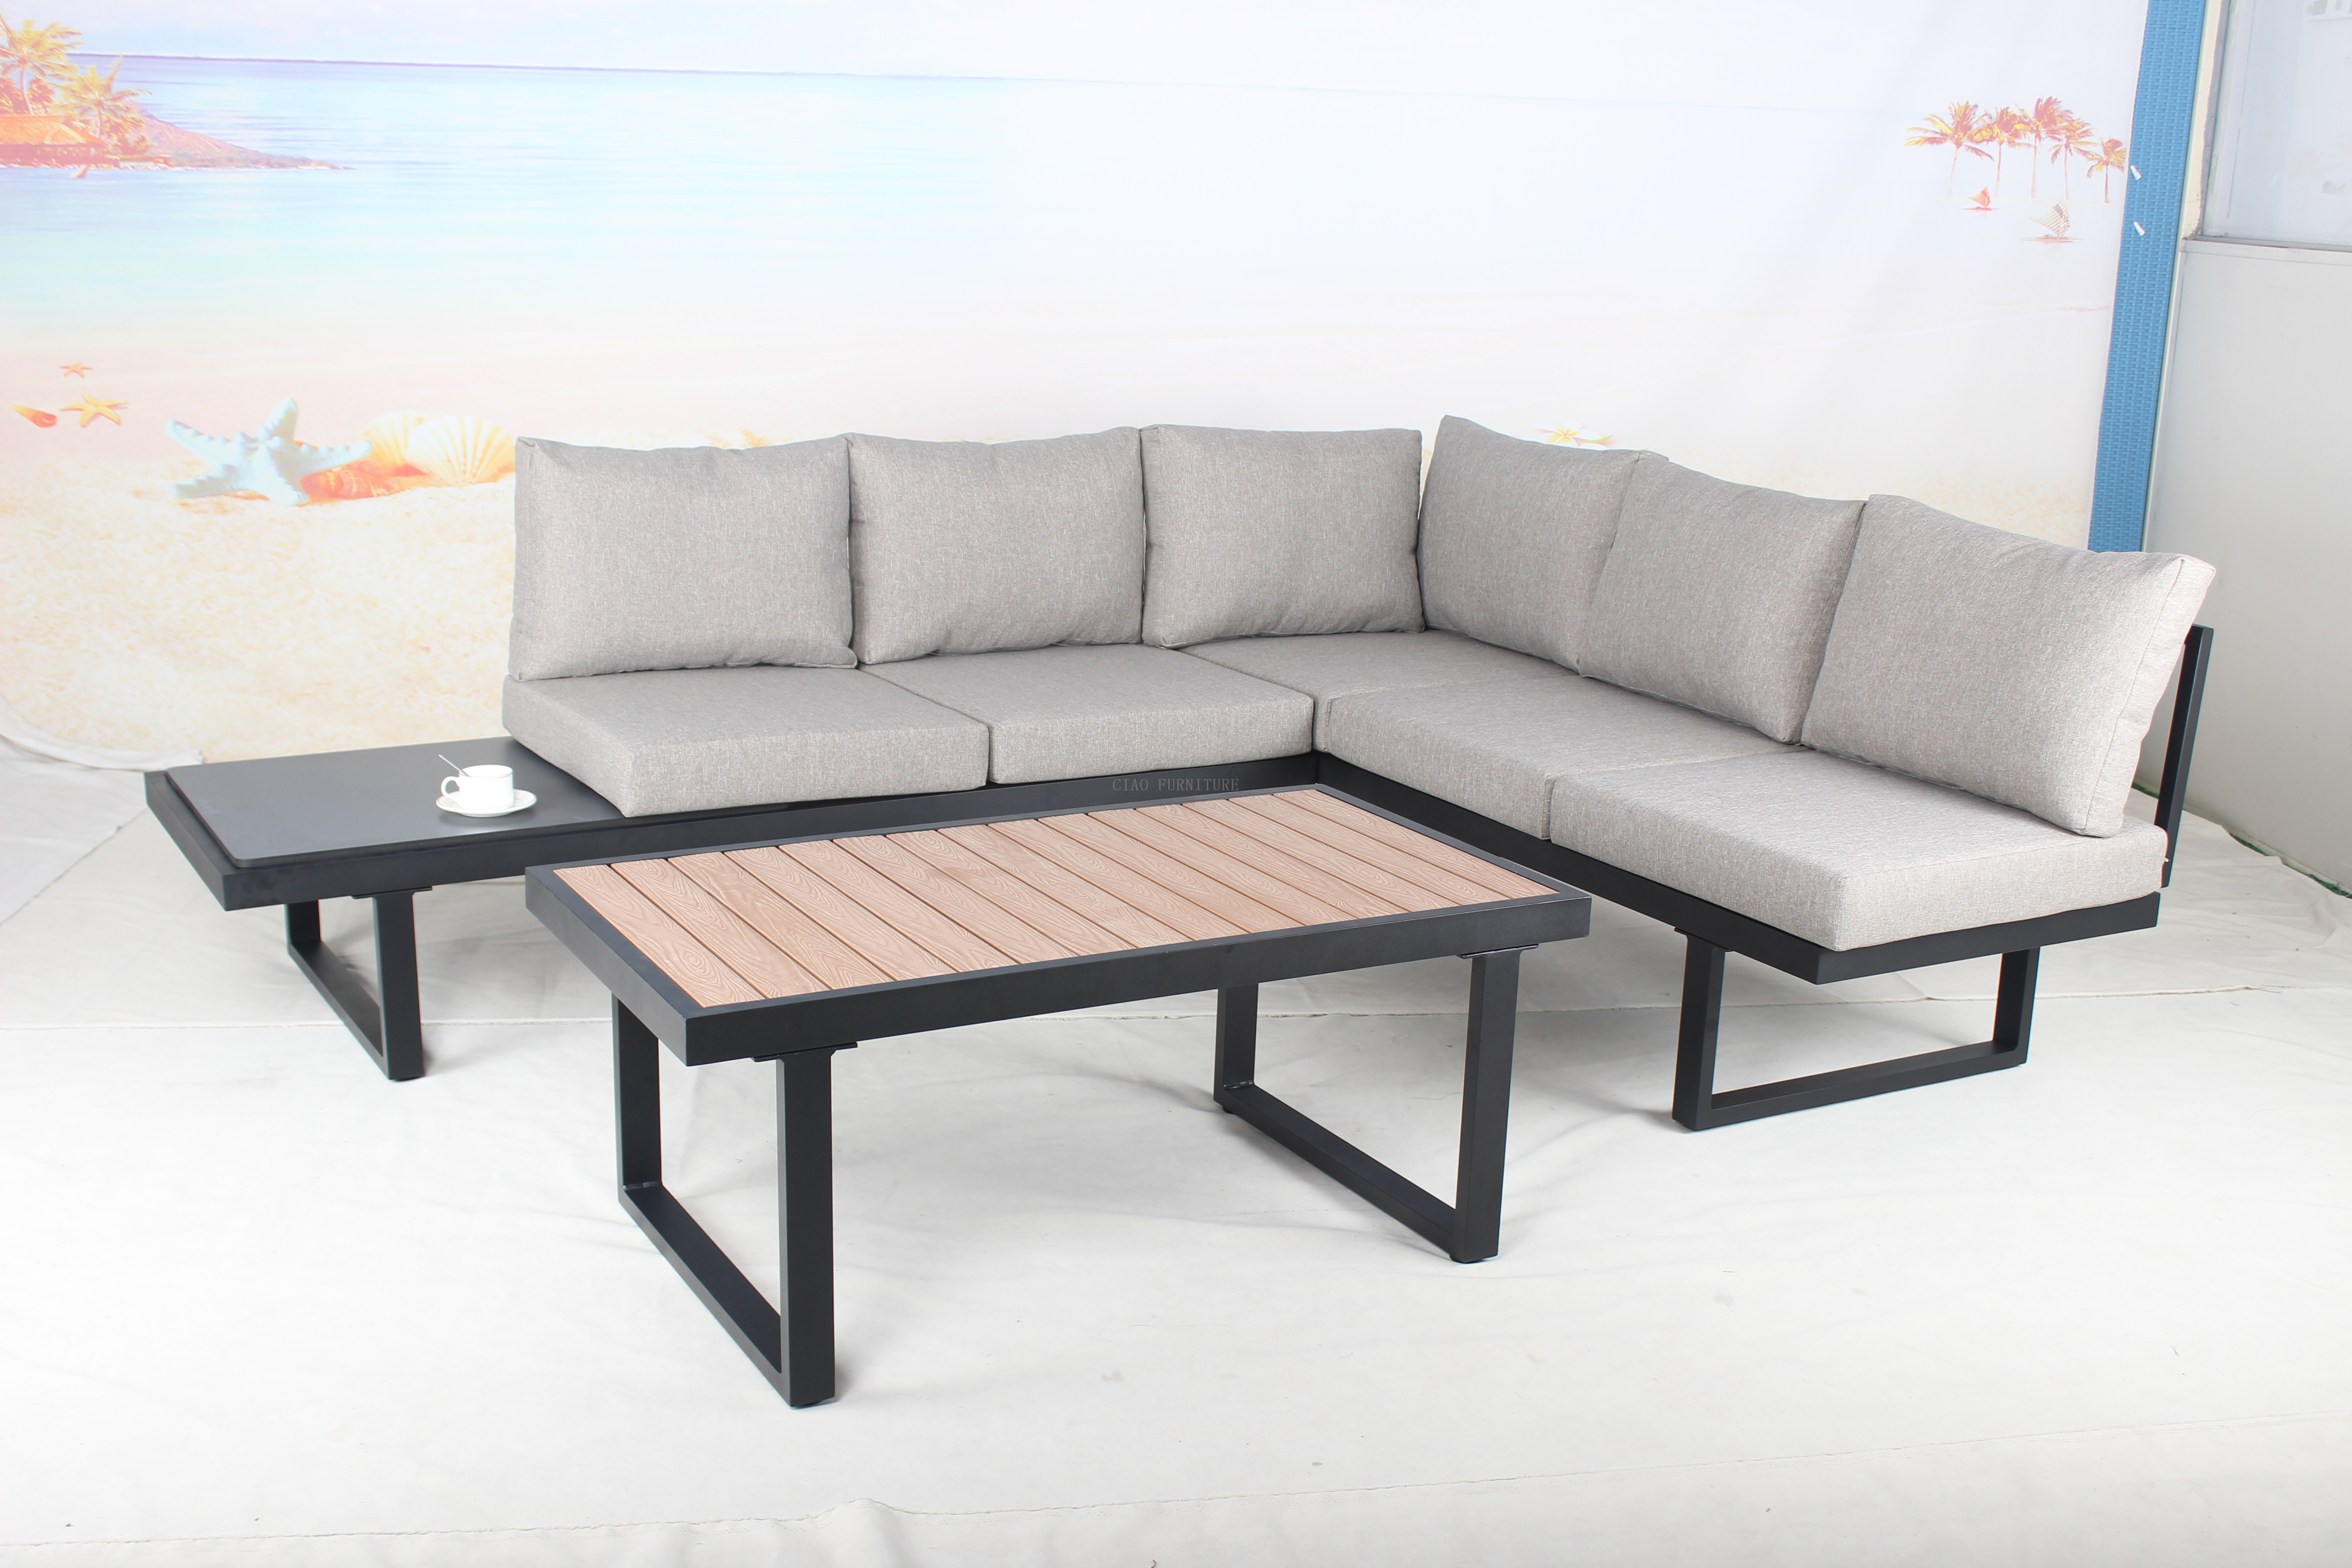 Modern outdoor garden patio sectional sofa